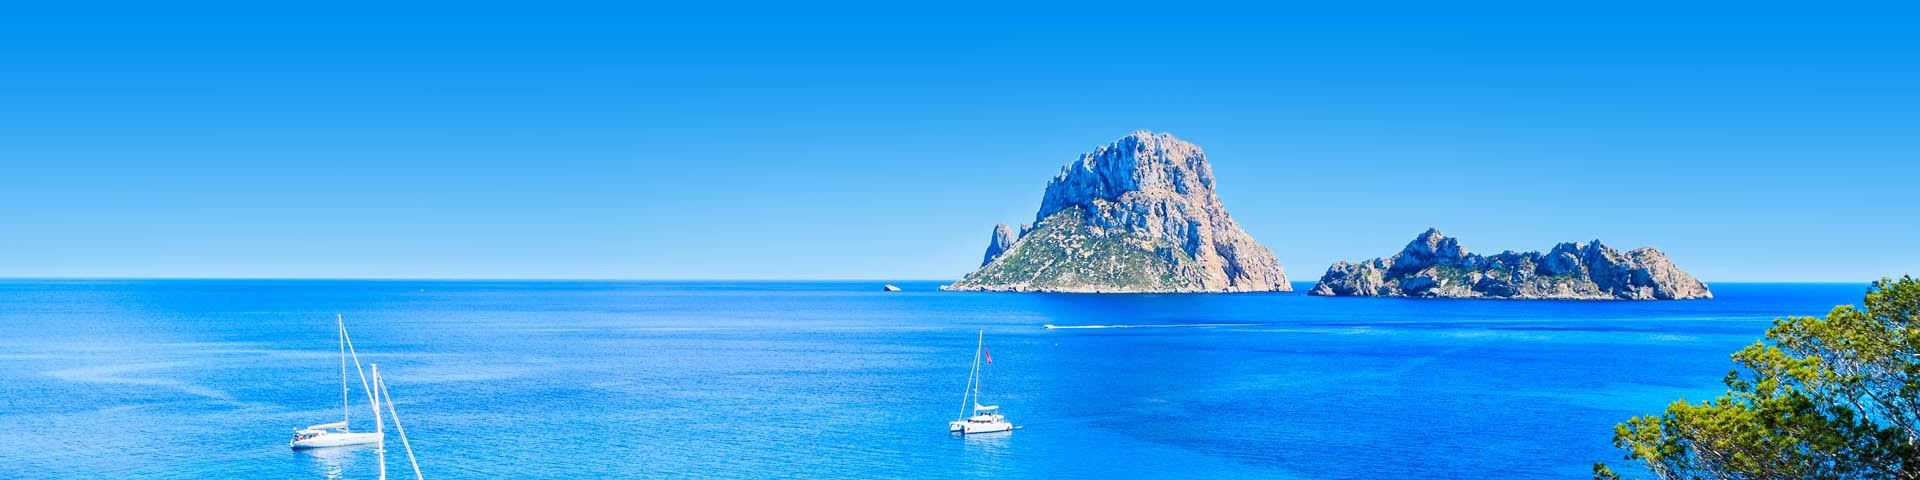 Kustlijn van Ibiza met helderblauw zeewater en een bootje op de voorgrond